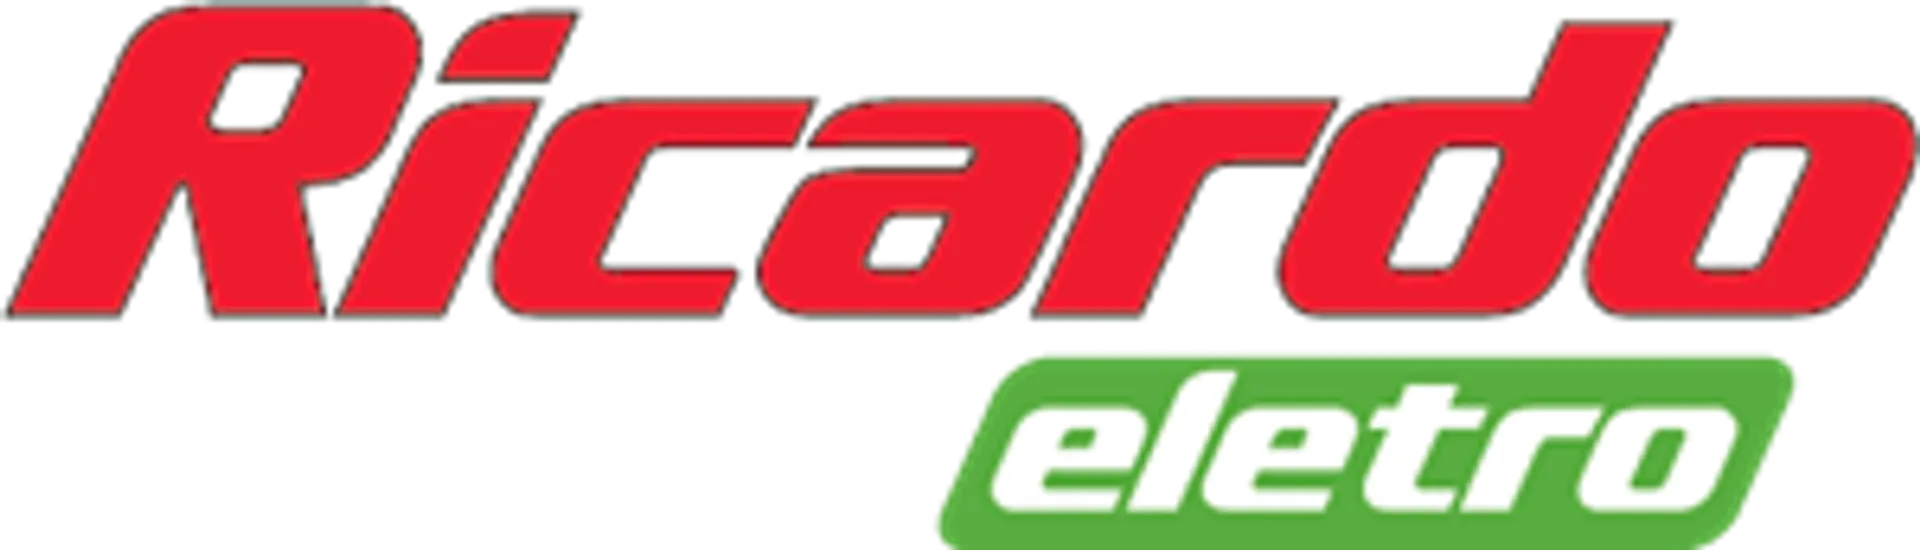 RICARDO ELETRO logo de catálogo